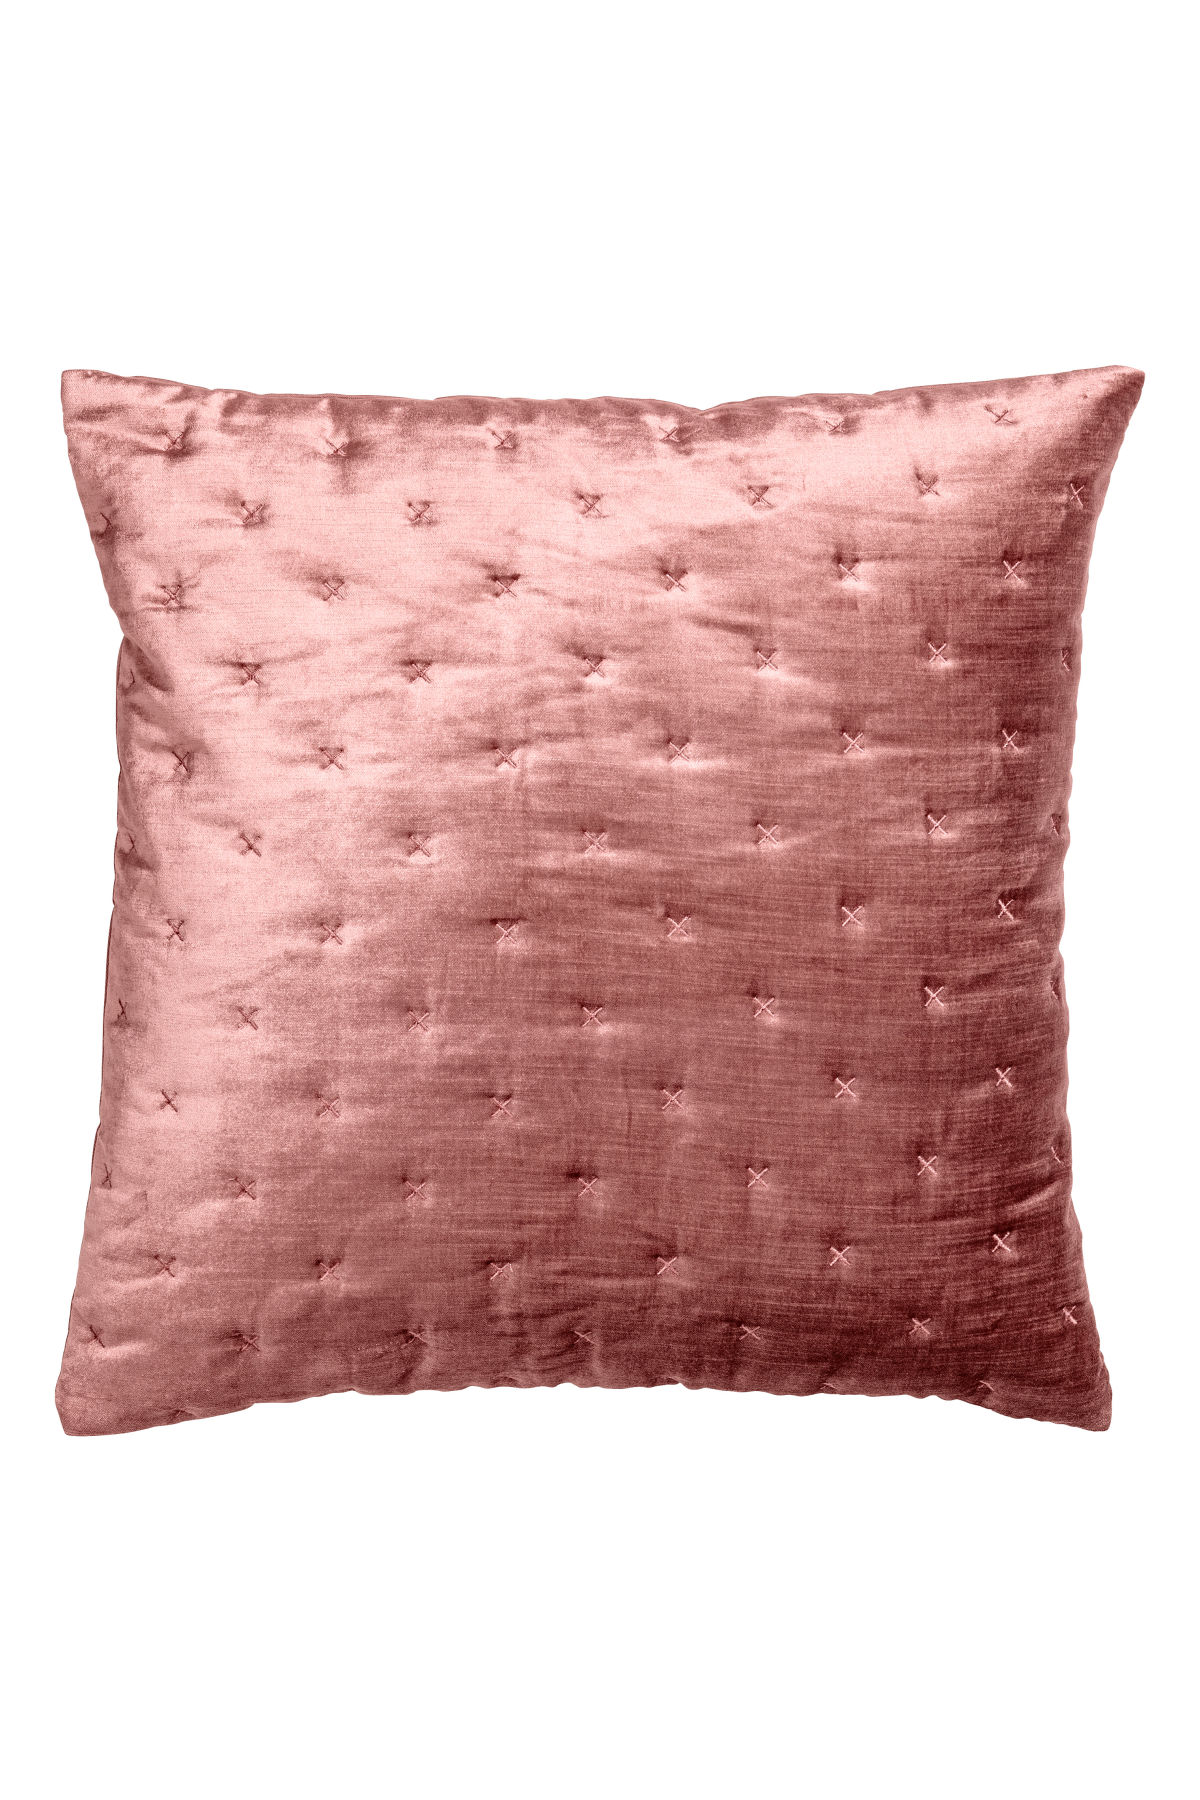 Silk Pillow $12.99